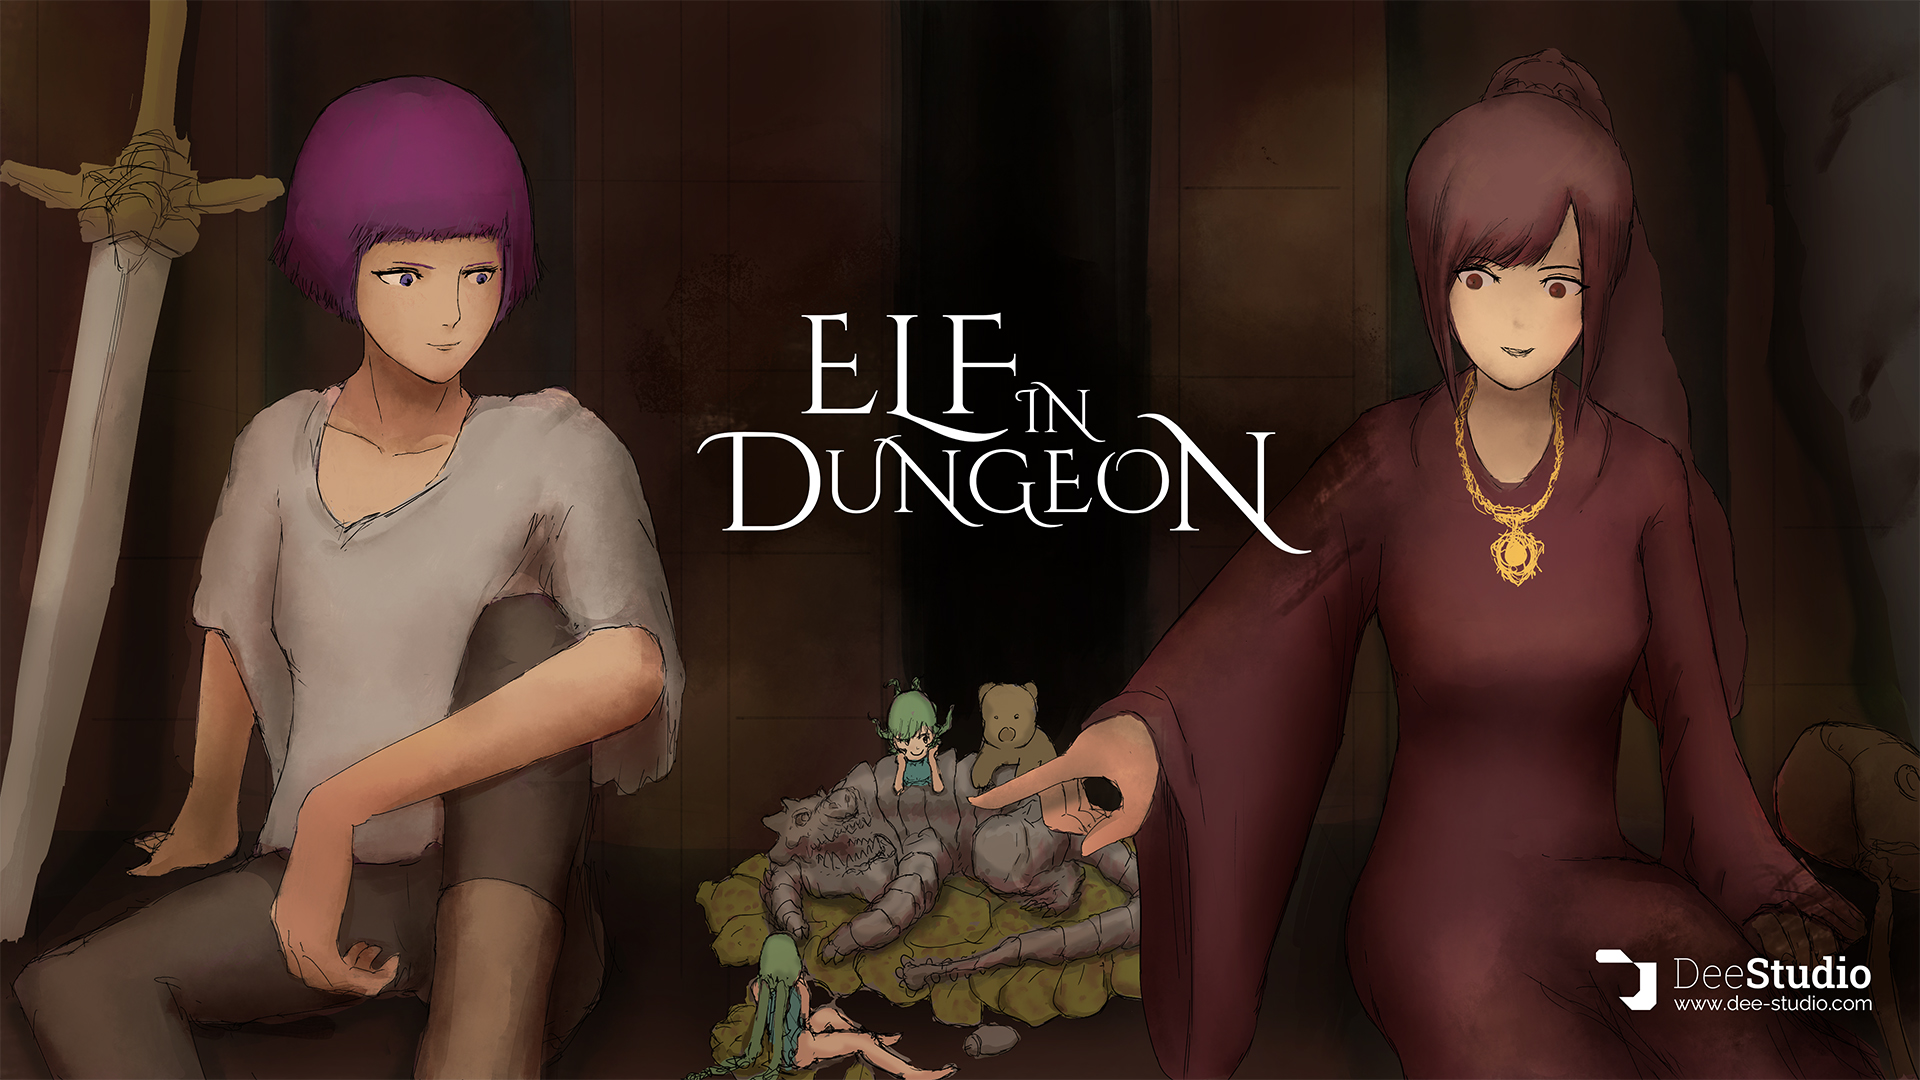 エルフインダンジョン開発日記 / Elf in Dungeon Dev Diary 4